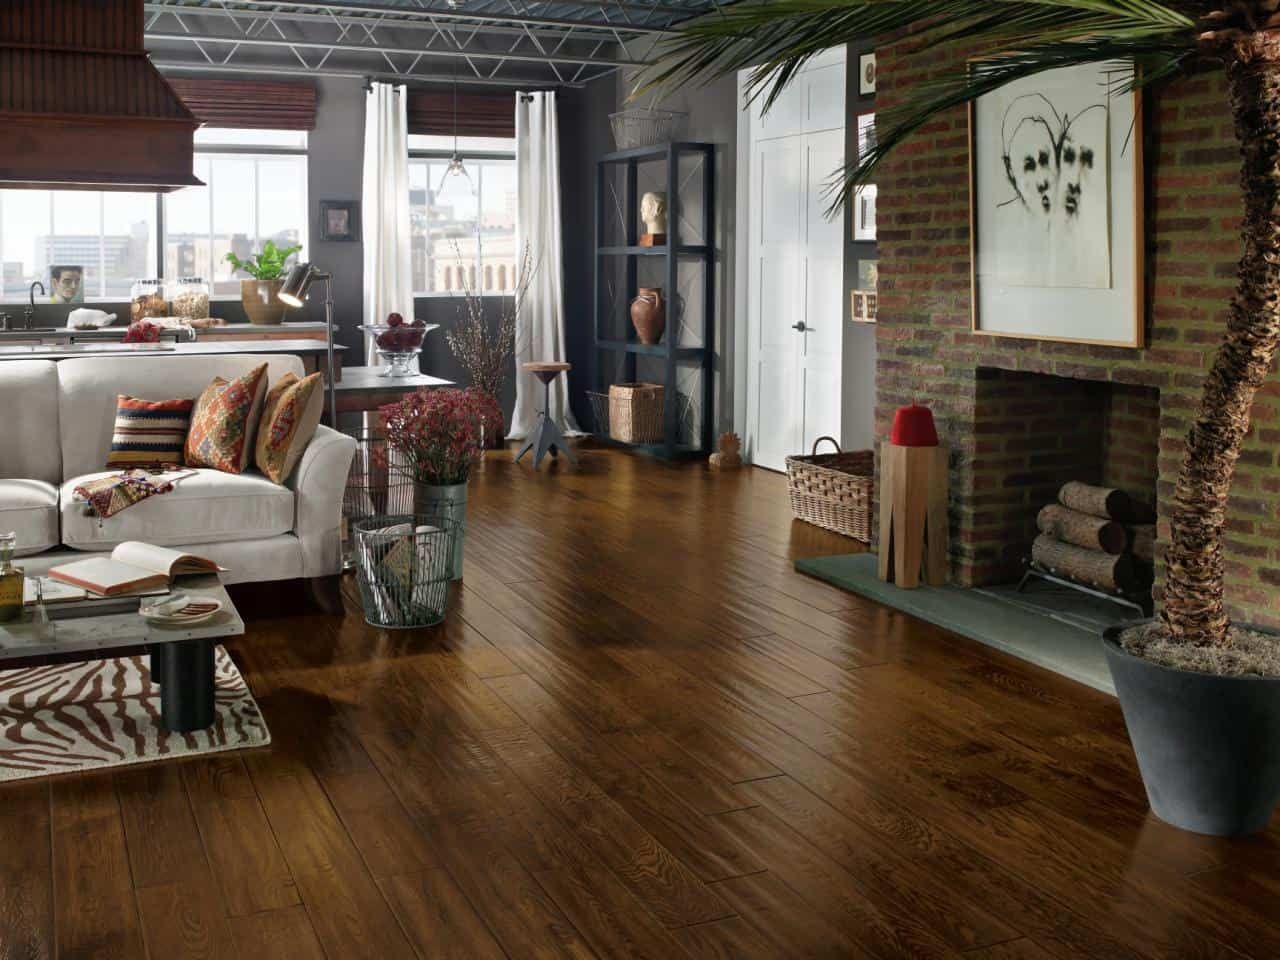 wooden floor living room decor